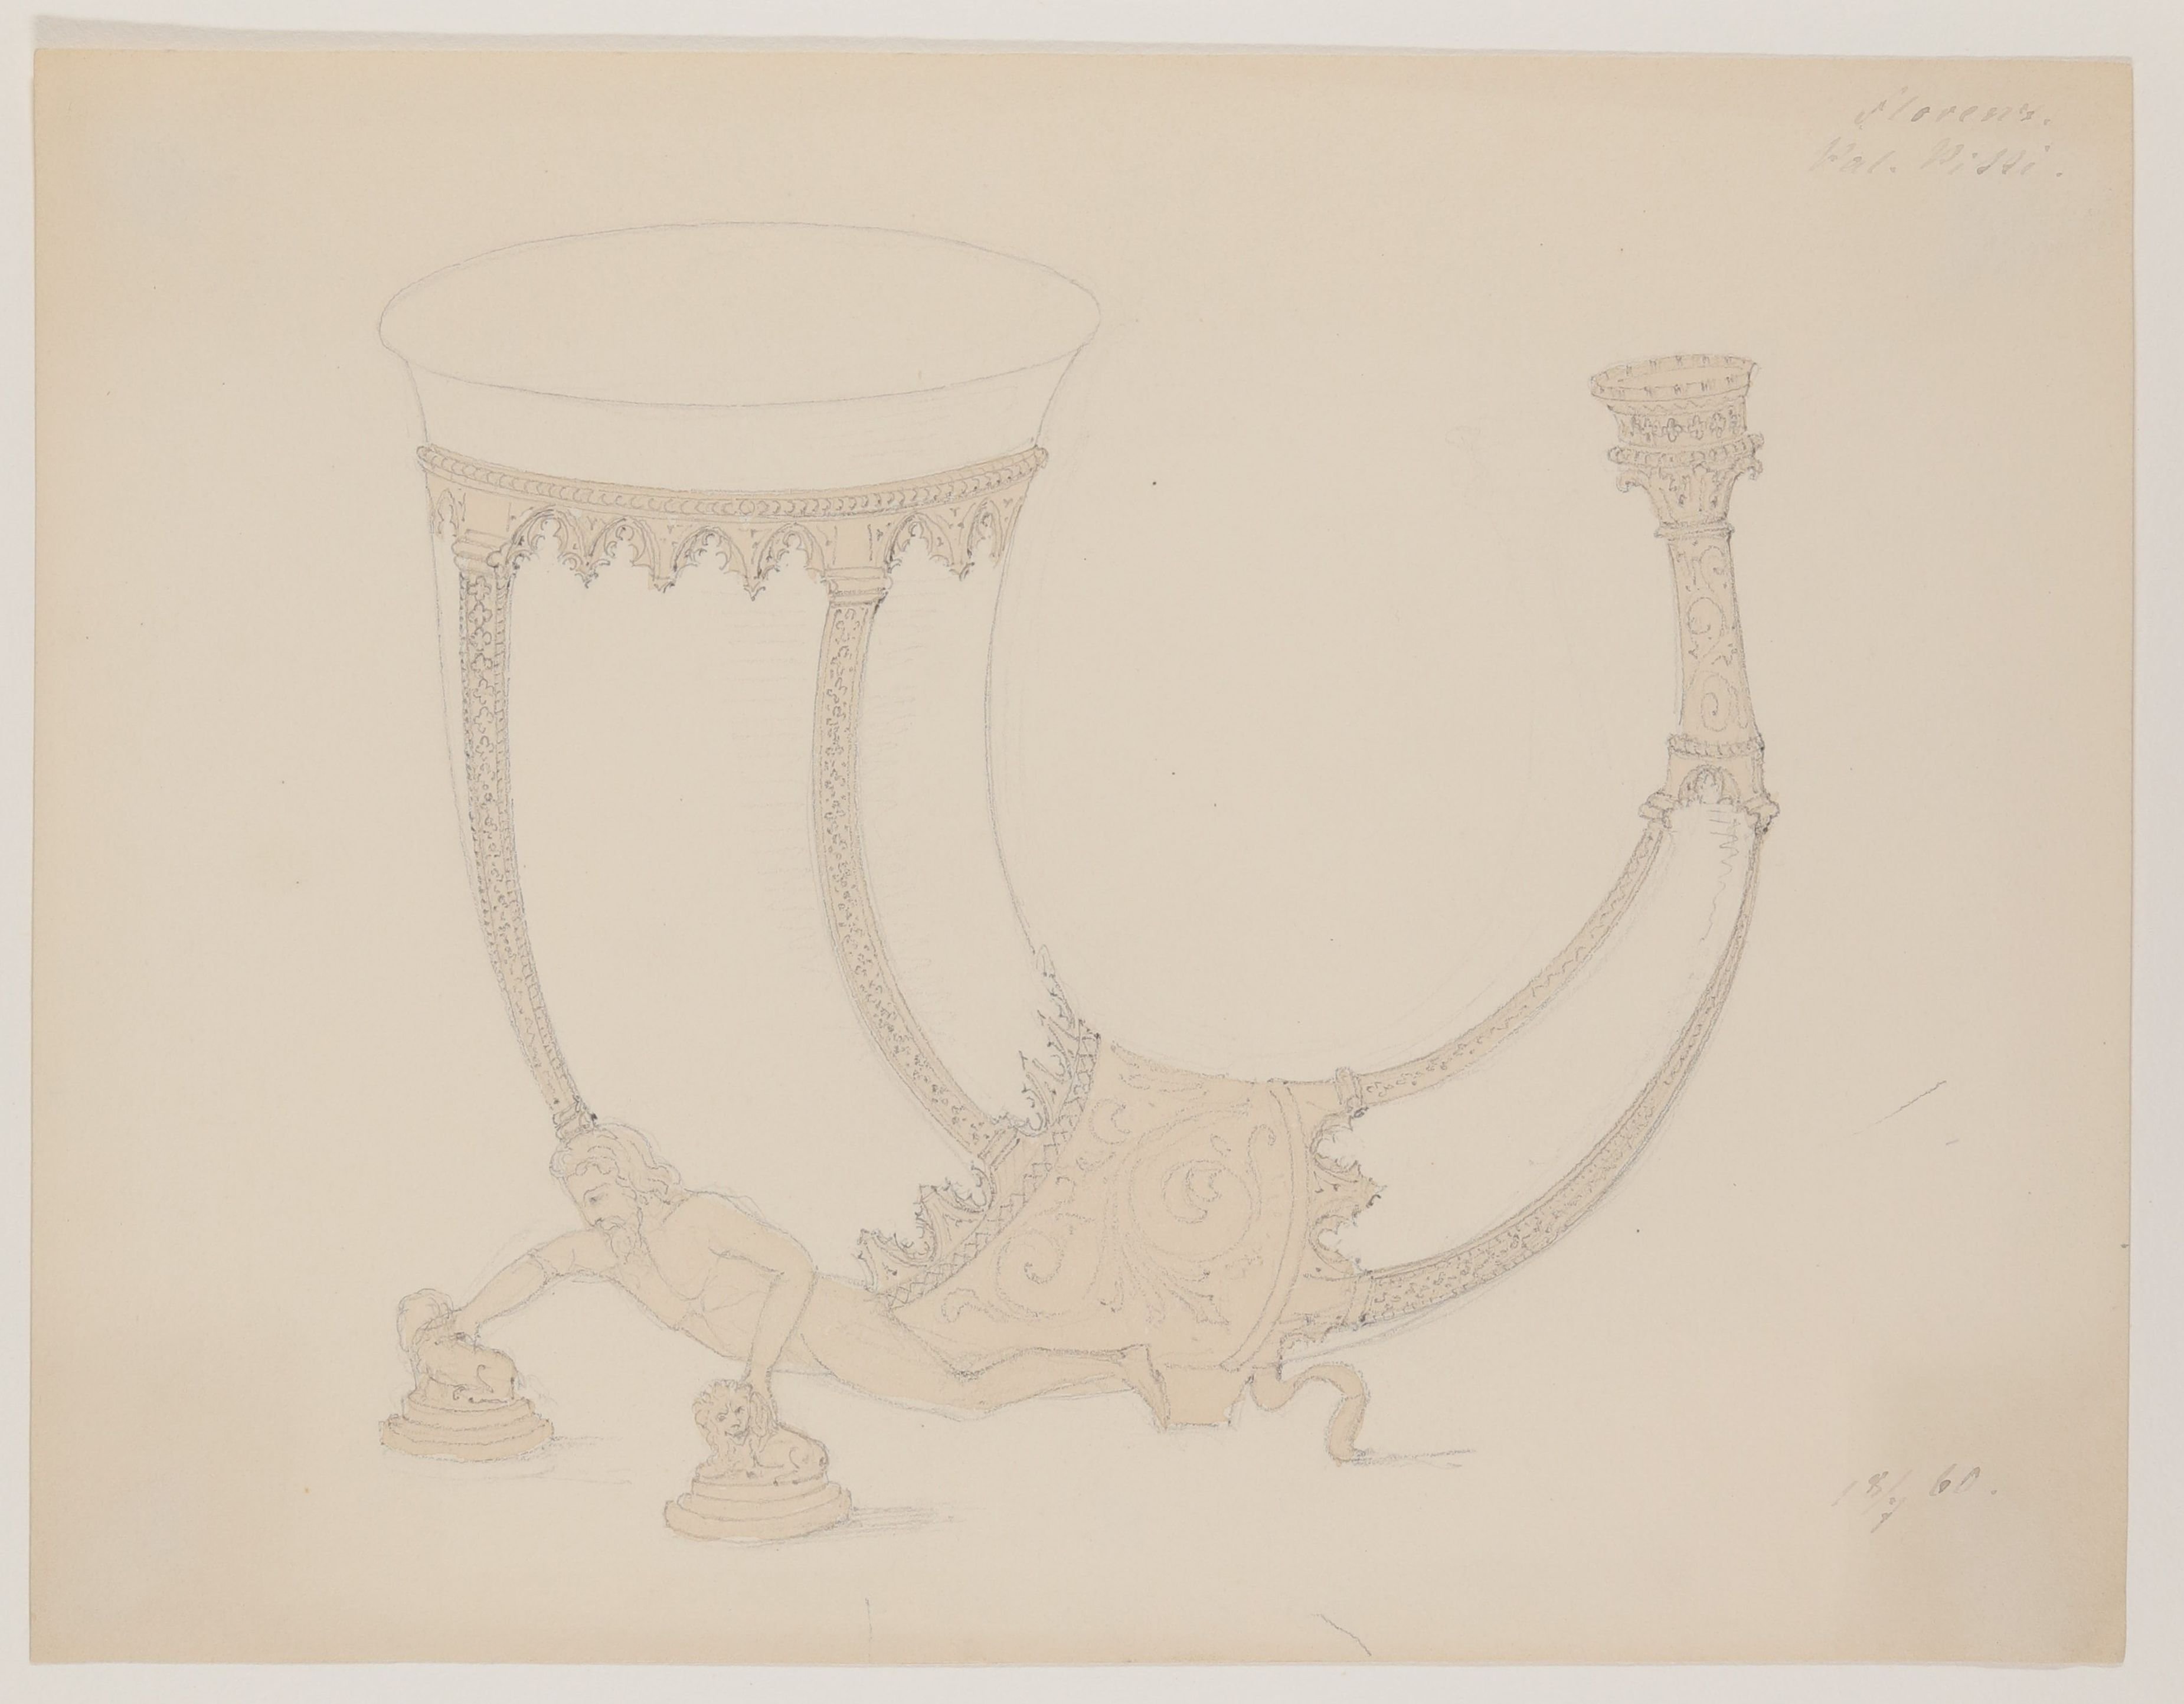 Trinkhorn aus dem Palazzo Pitti in Florenz [aus einem Konvolut von 107 Blatt Architekturstudien und Skizzen einer Italienreise] (Freies Deutsches Hochstift CC BY-NC-SA)